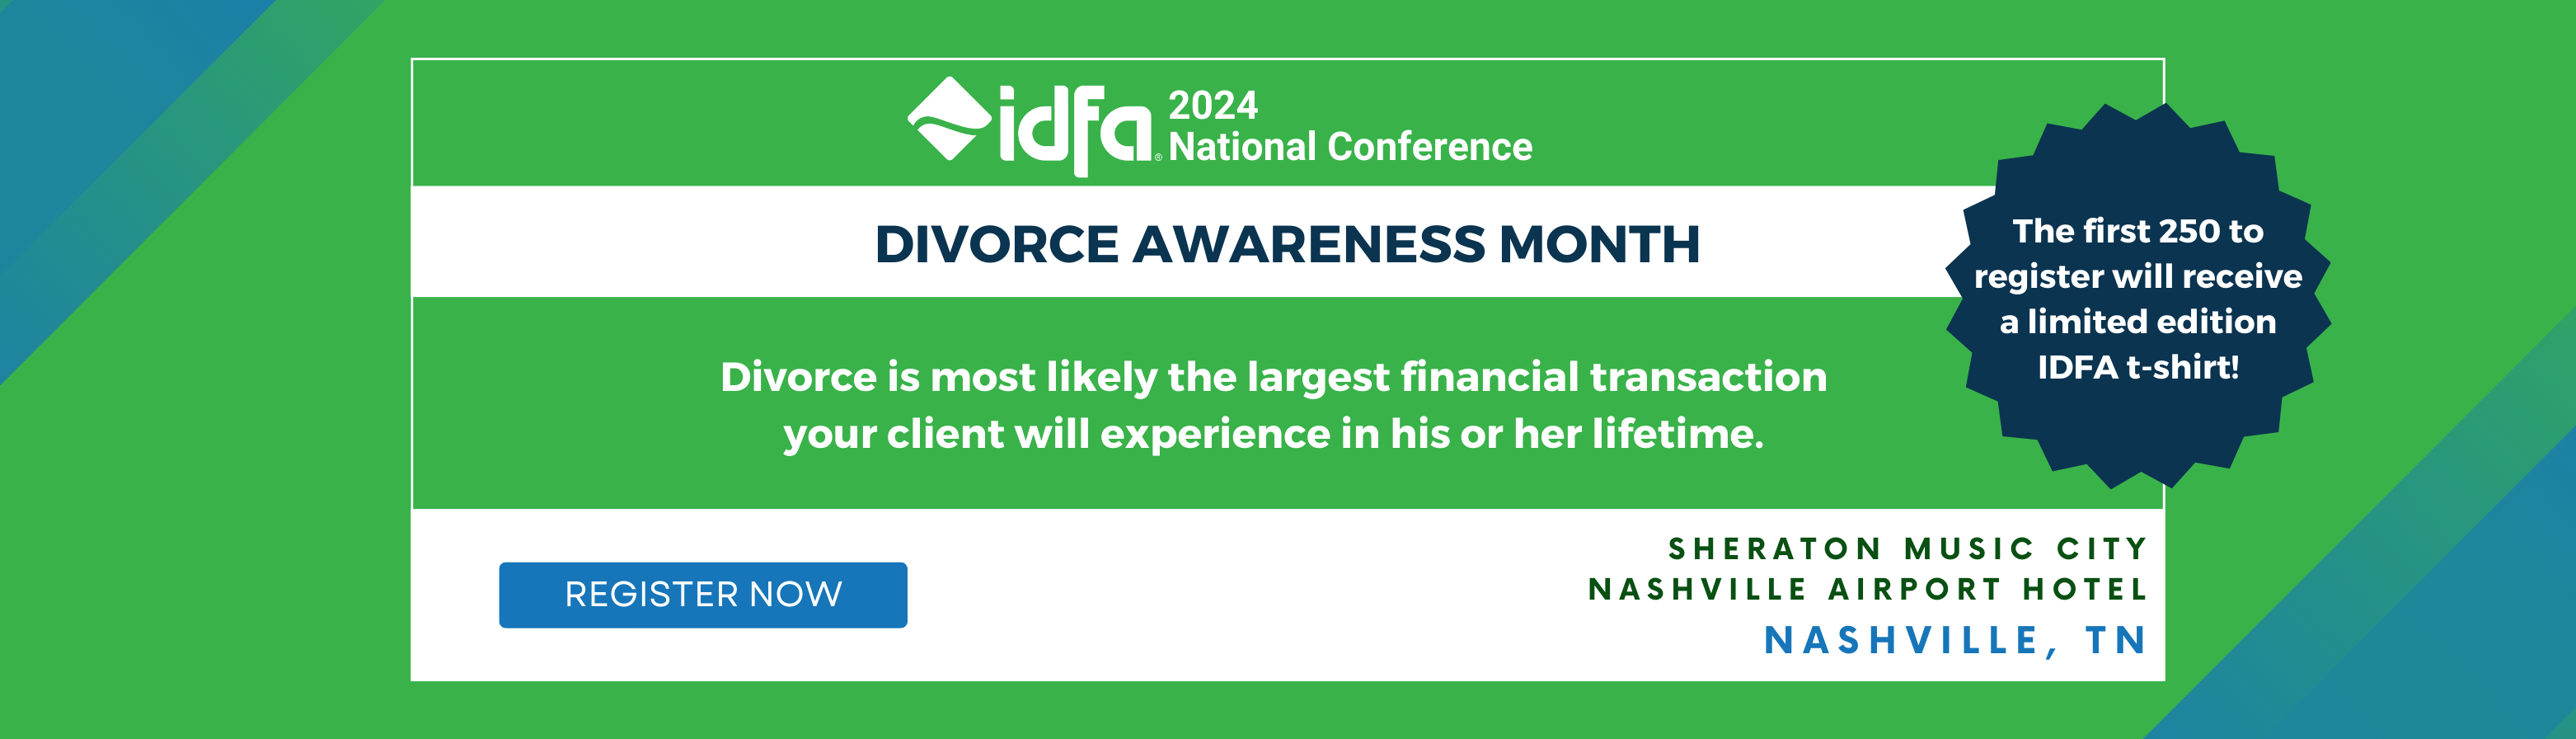 IDFA Divorce Awareness Month